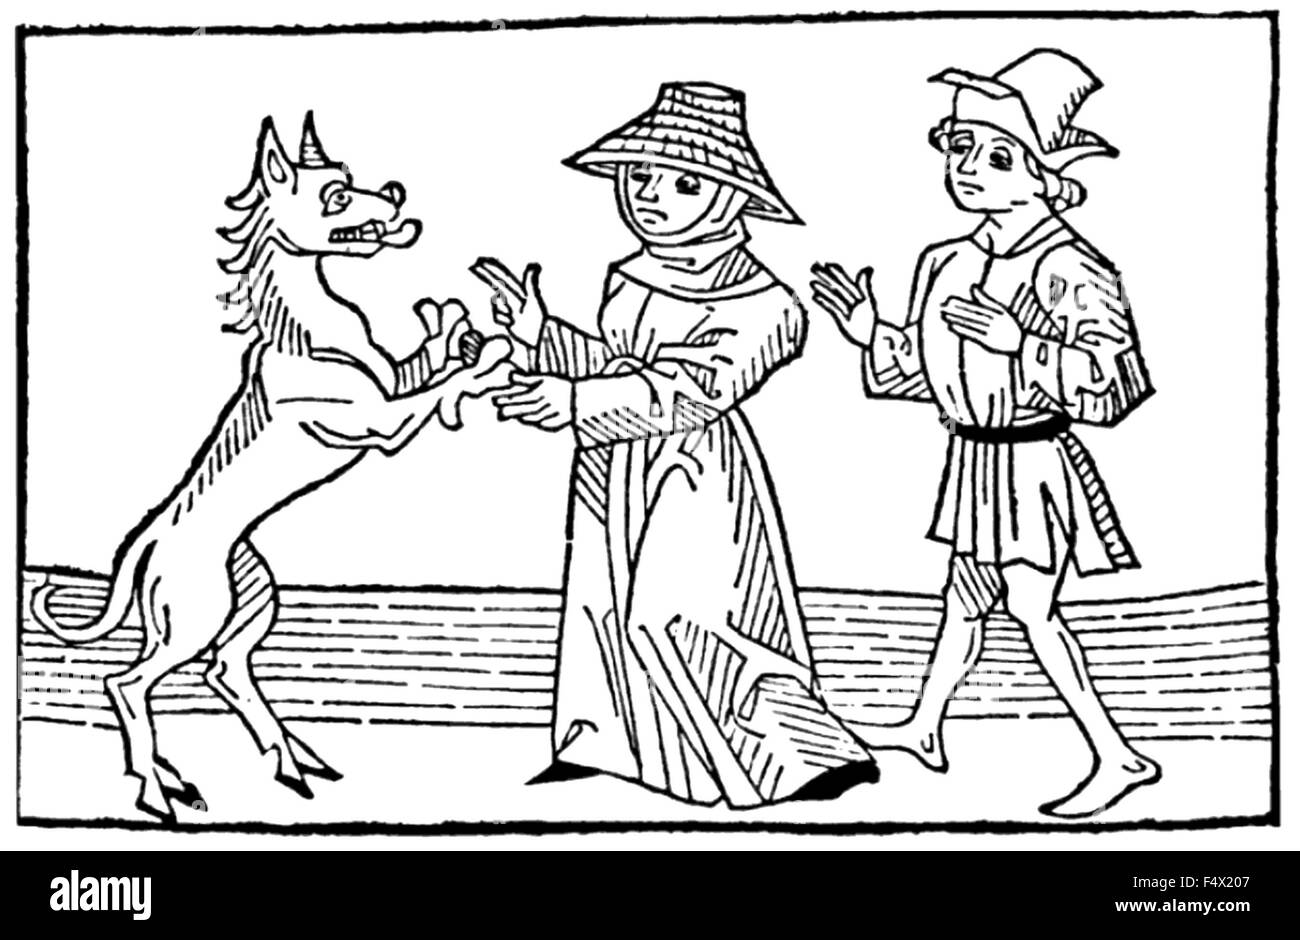 La stregoneria xilografia medievale di un maschio e femail streghe con il diavolo nella forma di un enorme cane. Nota i selvaggi zoccoli. Foto Stock